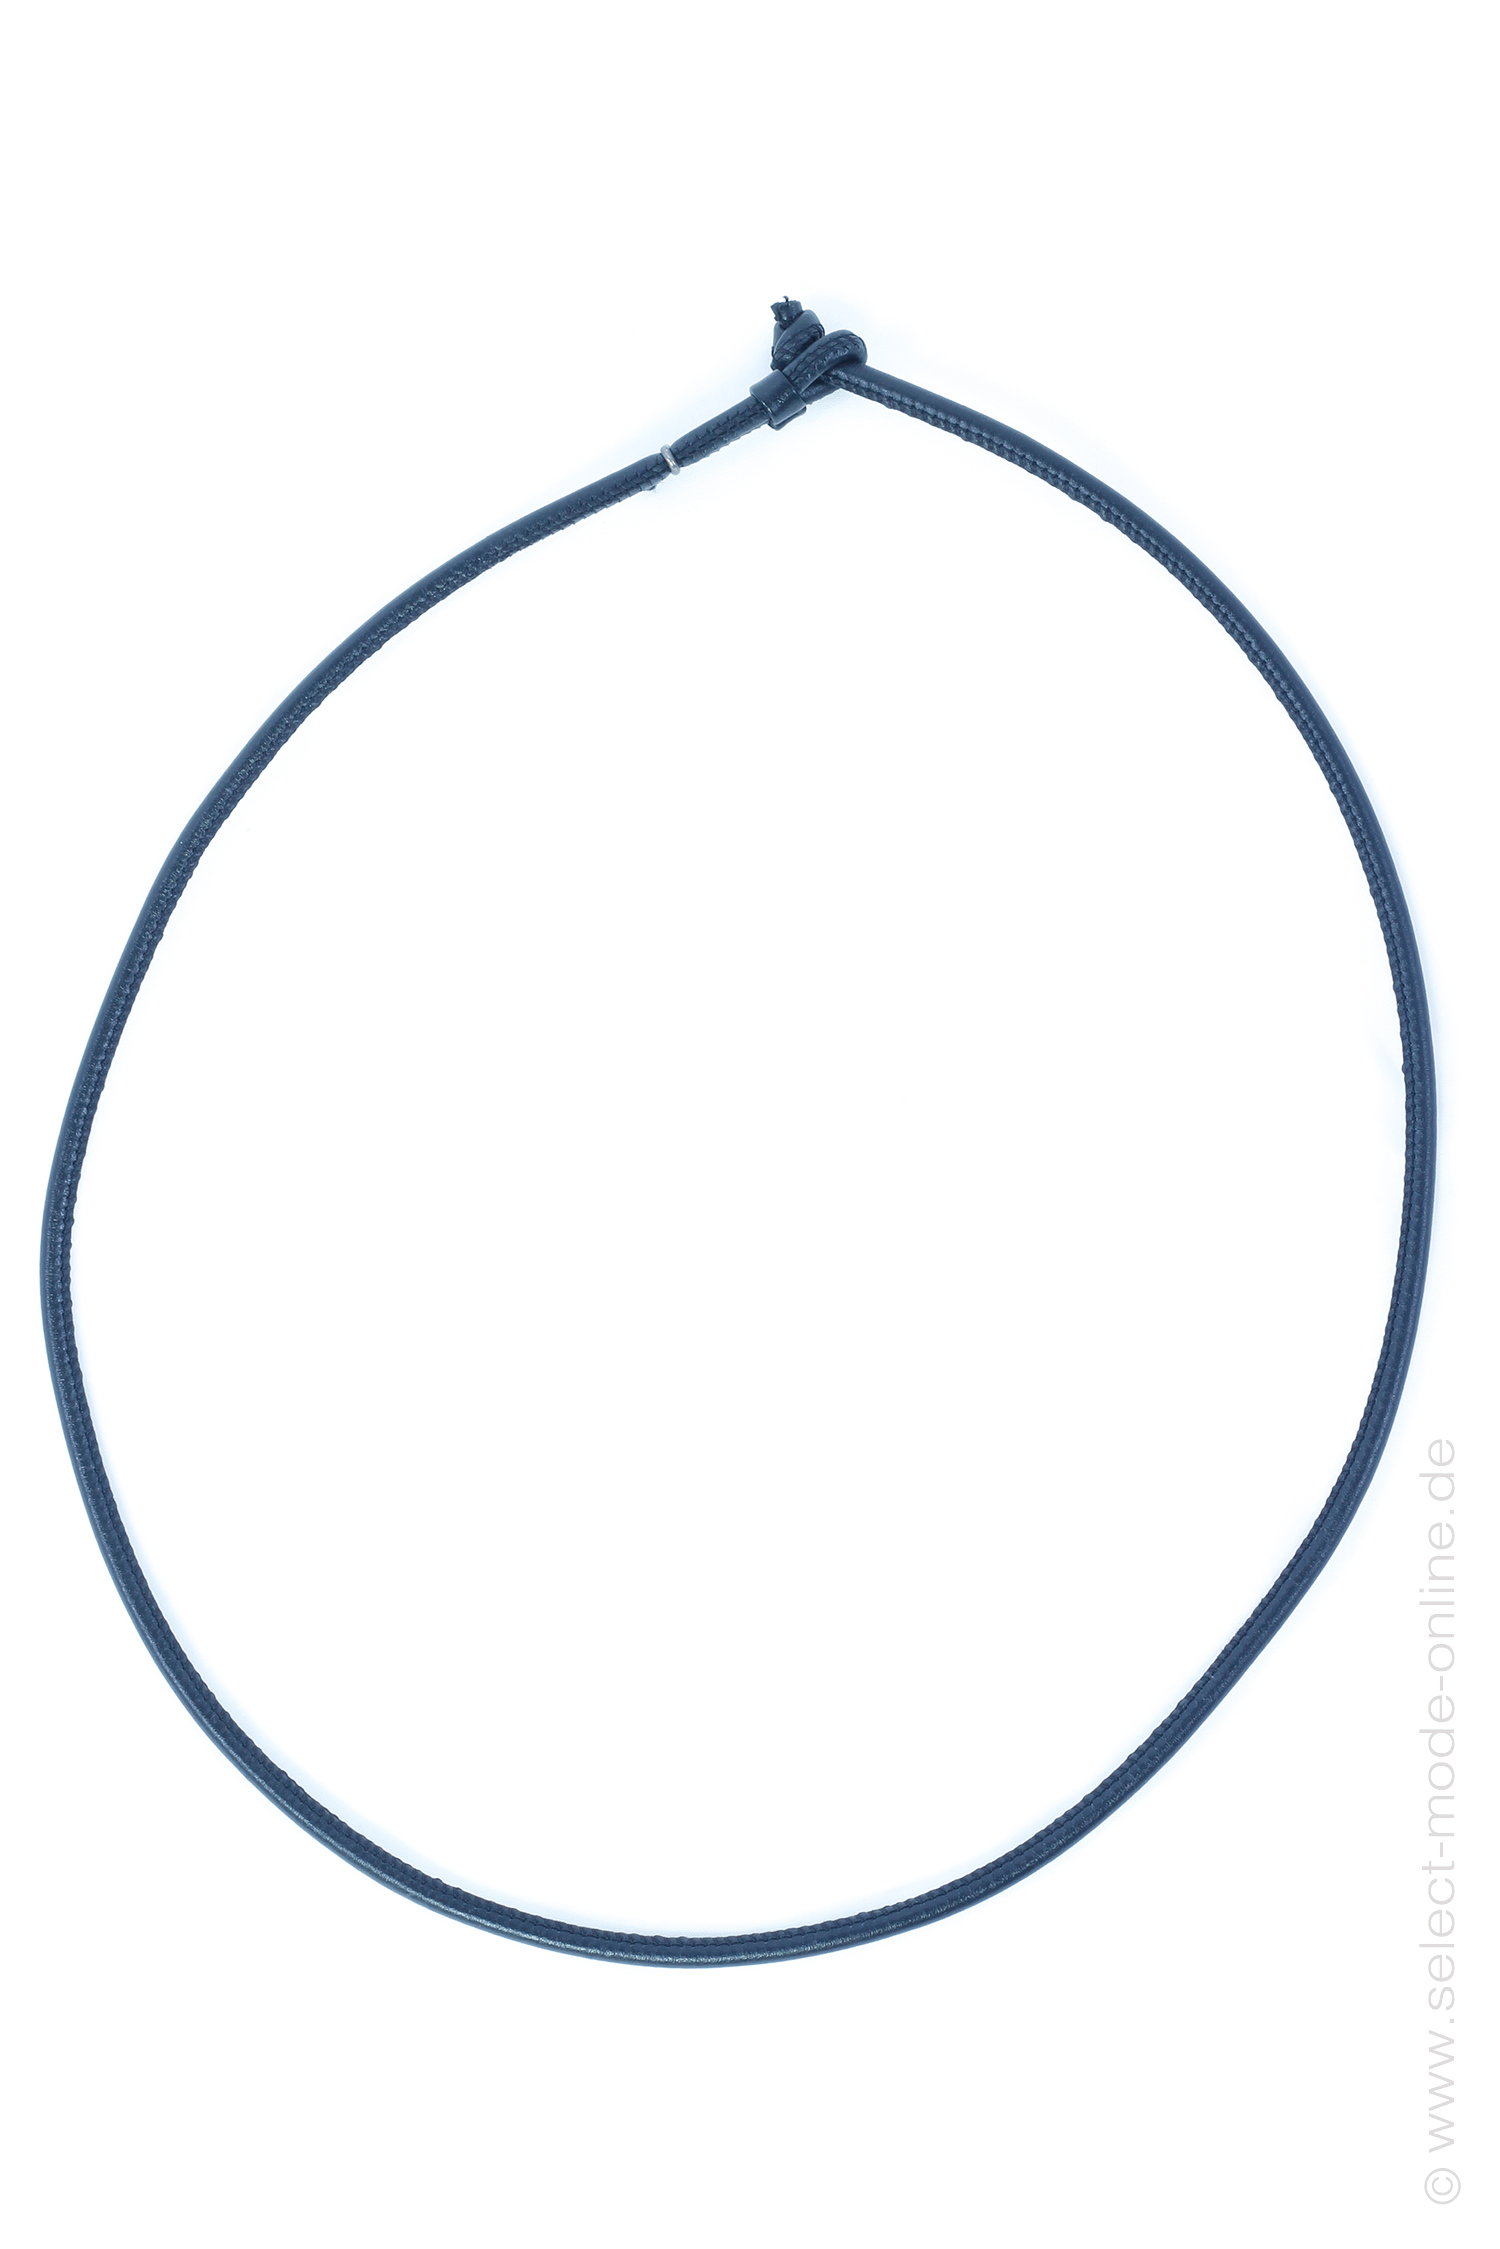 Leather necklace 1 - 80 cm - black - DG017